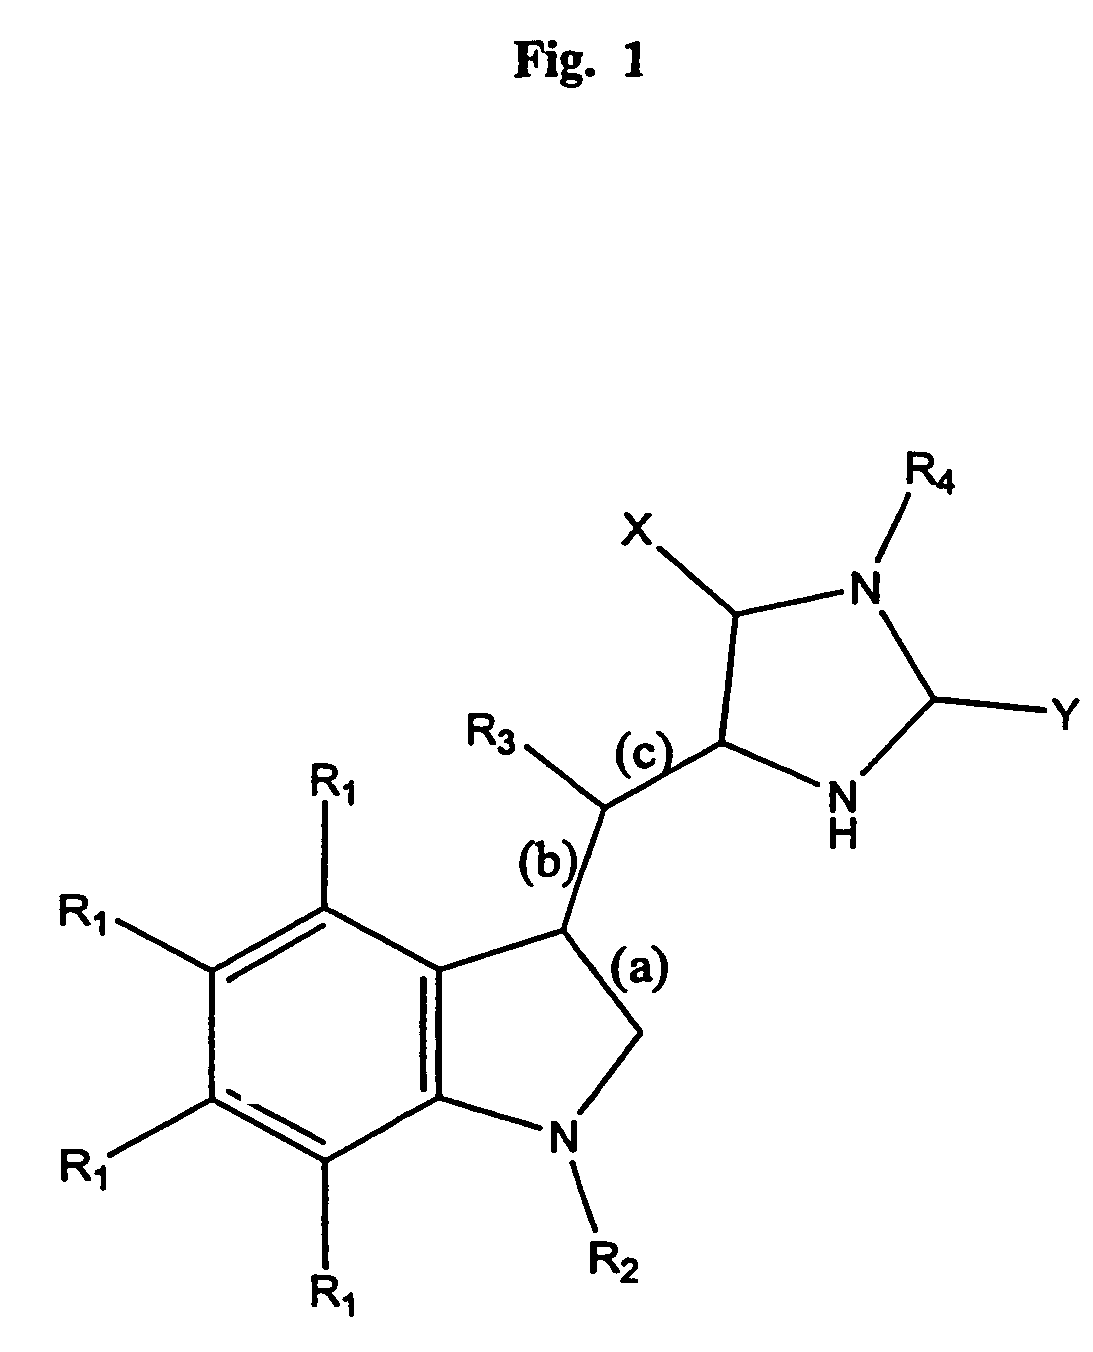 Small molecule inhibitors of necrosis